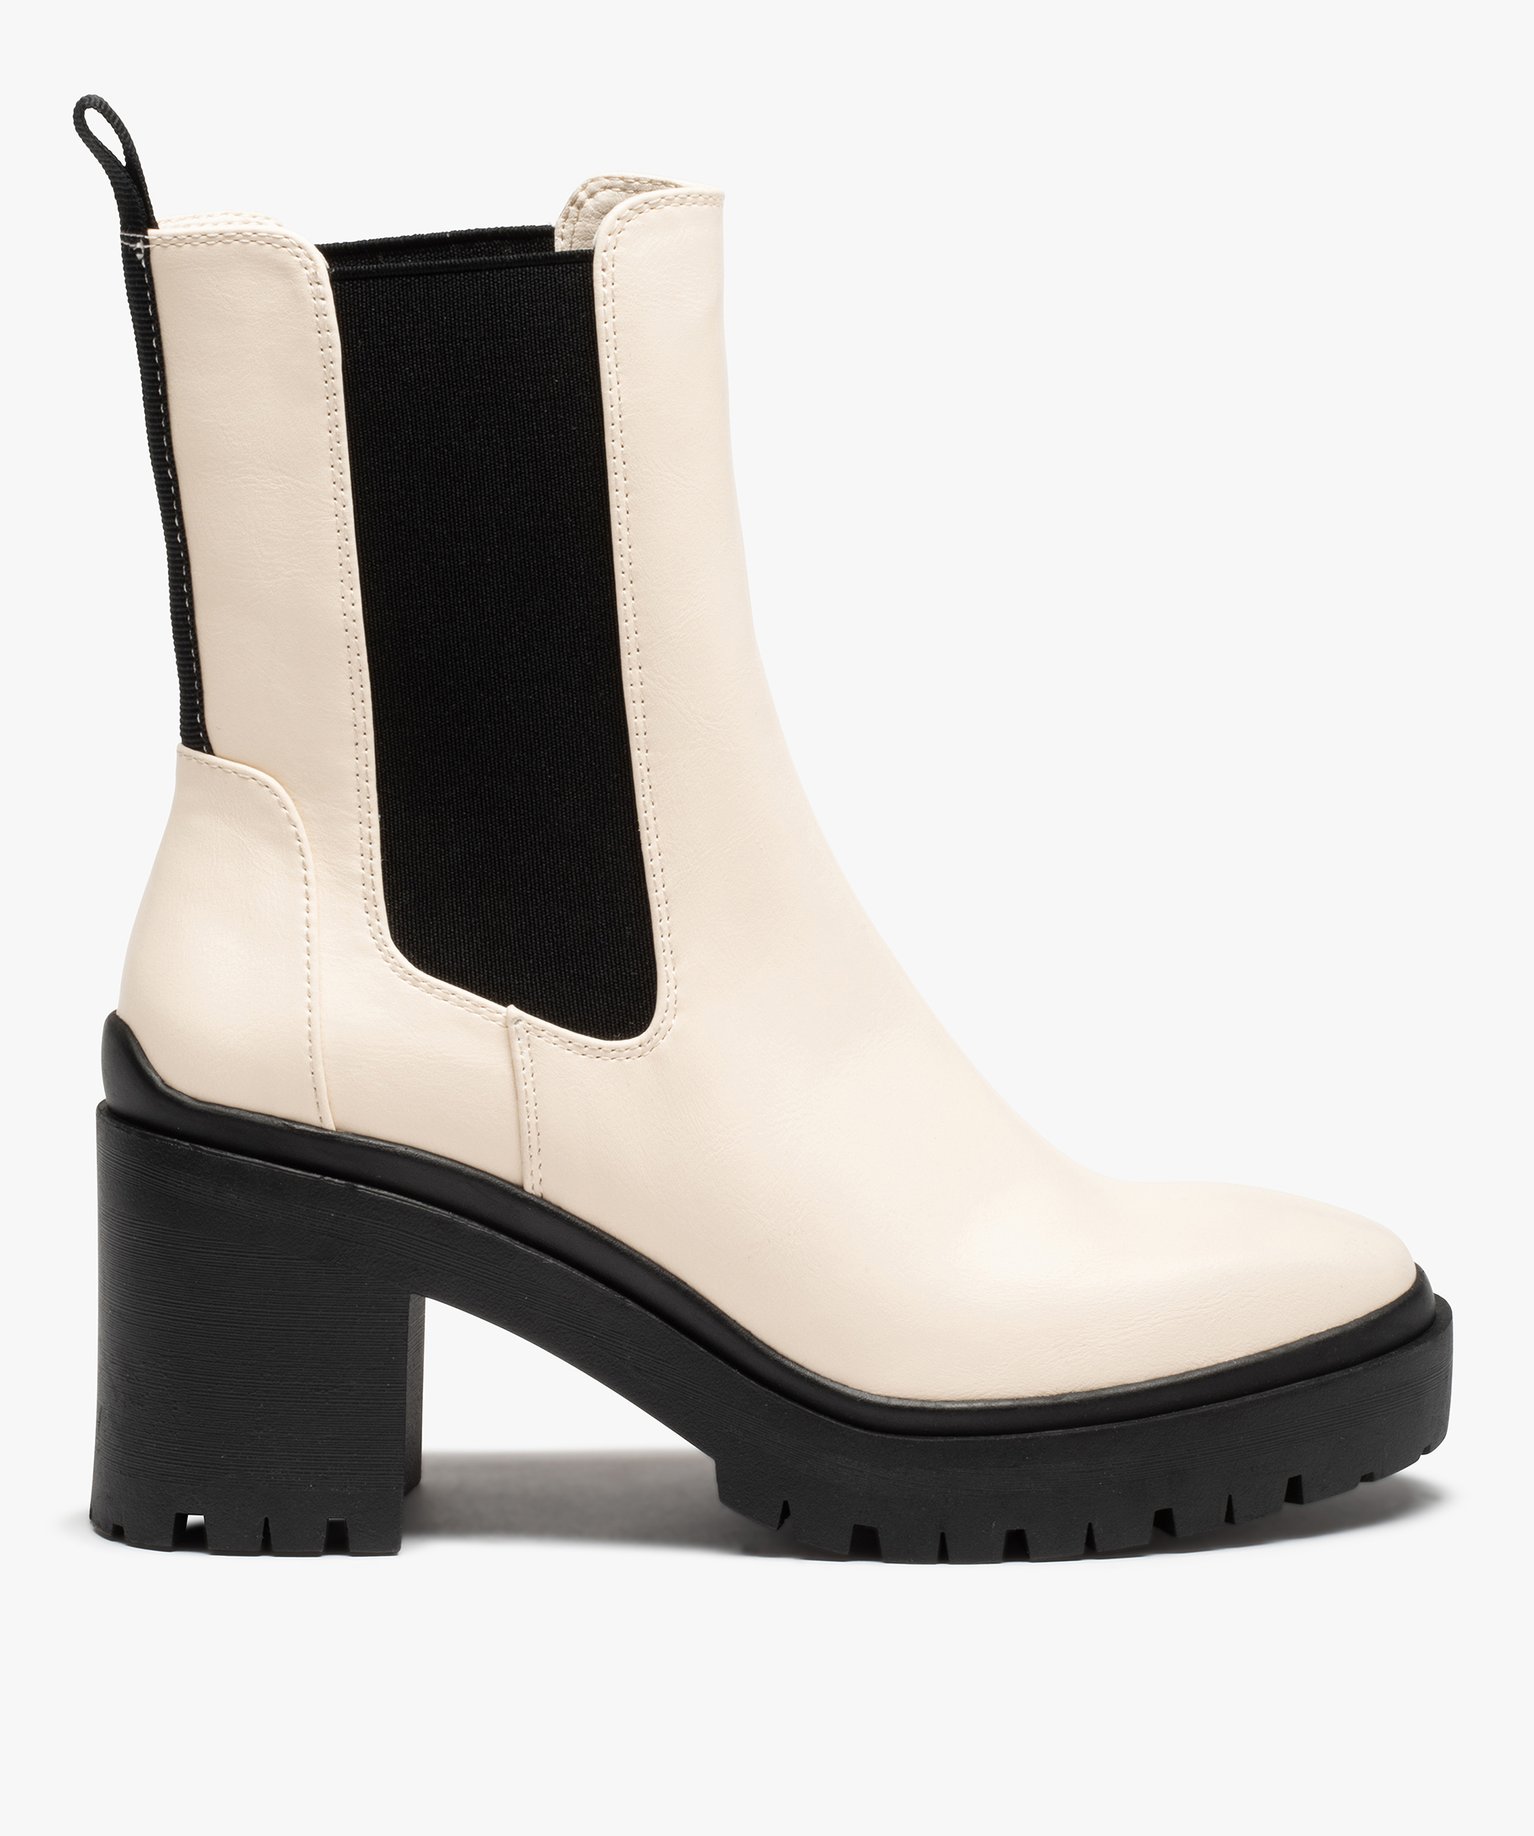 boots femme a talon large style chelsea bicolores blanc